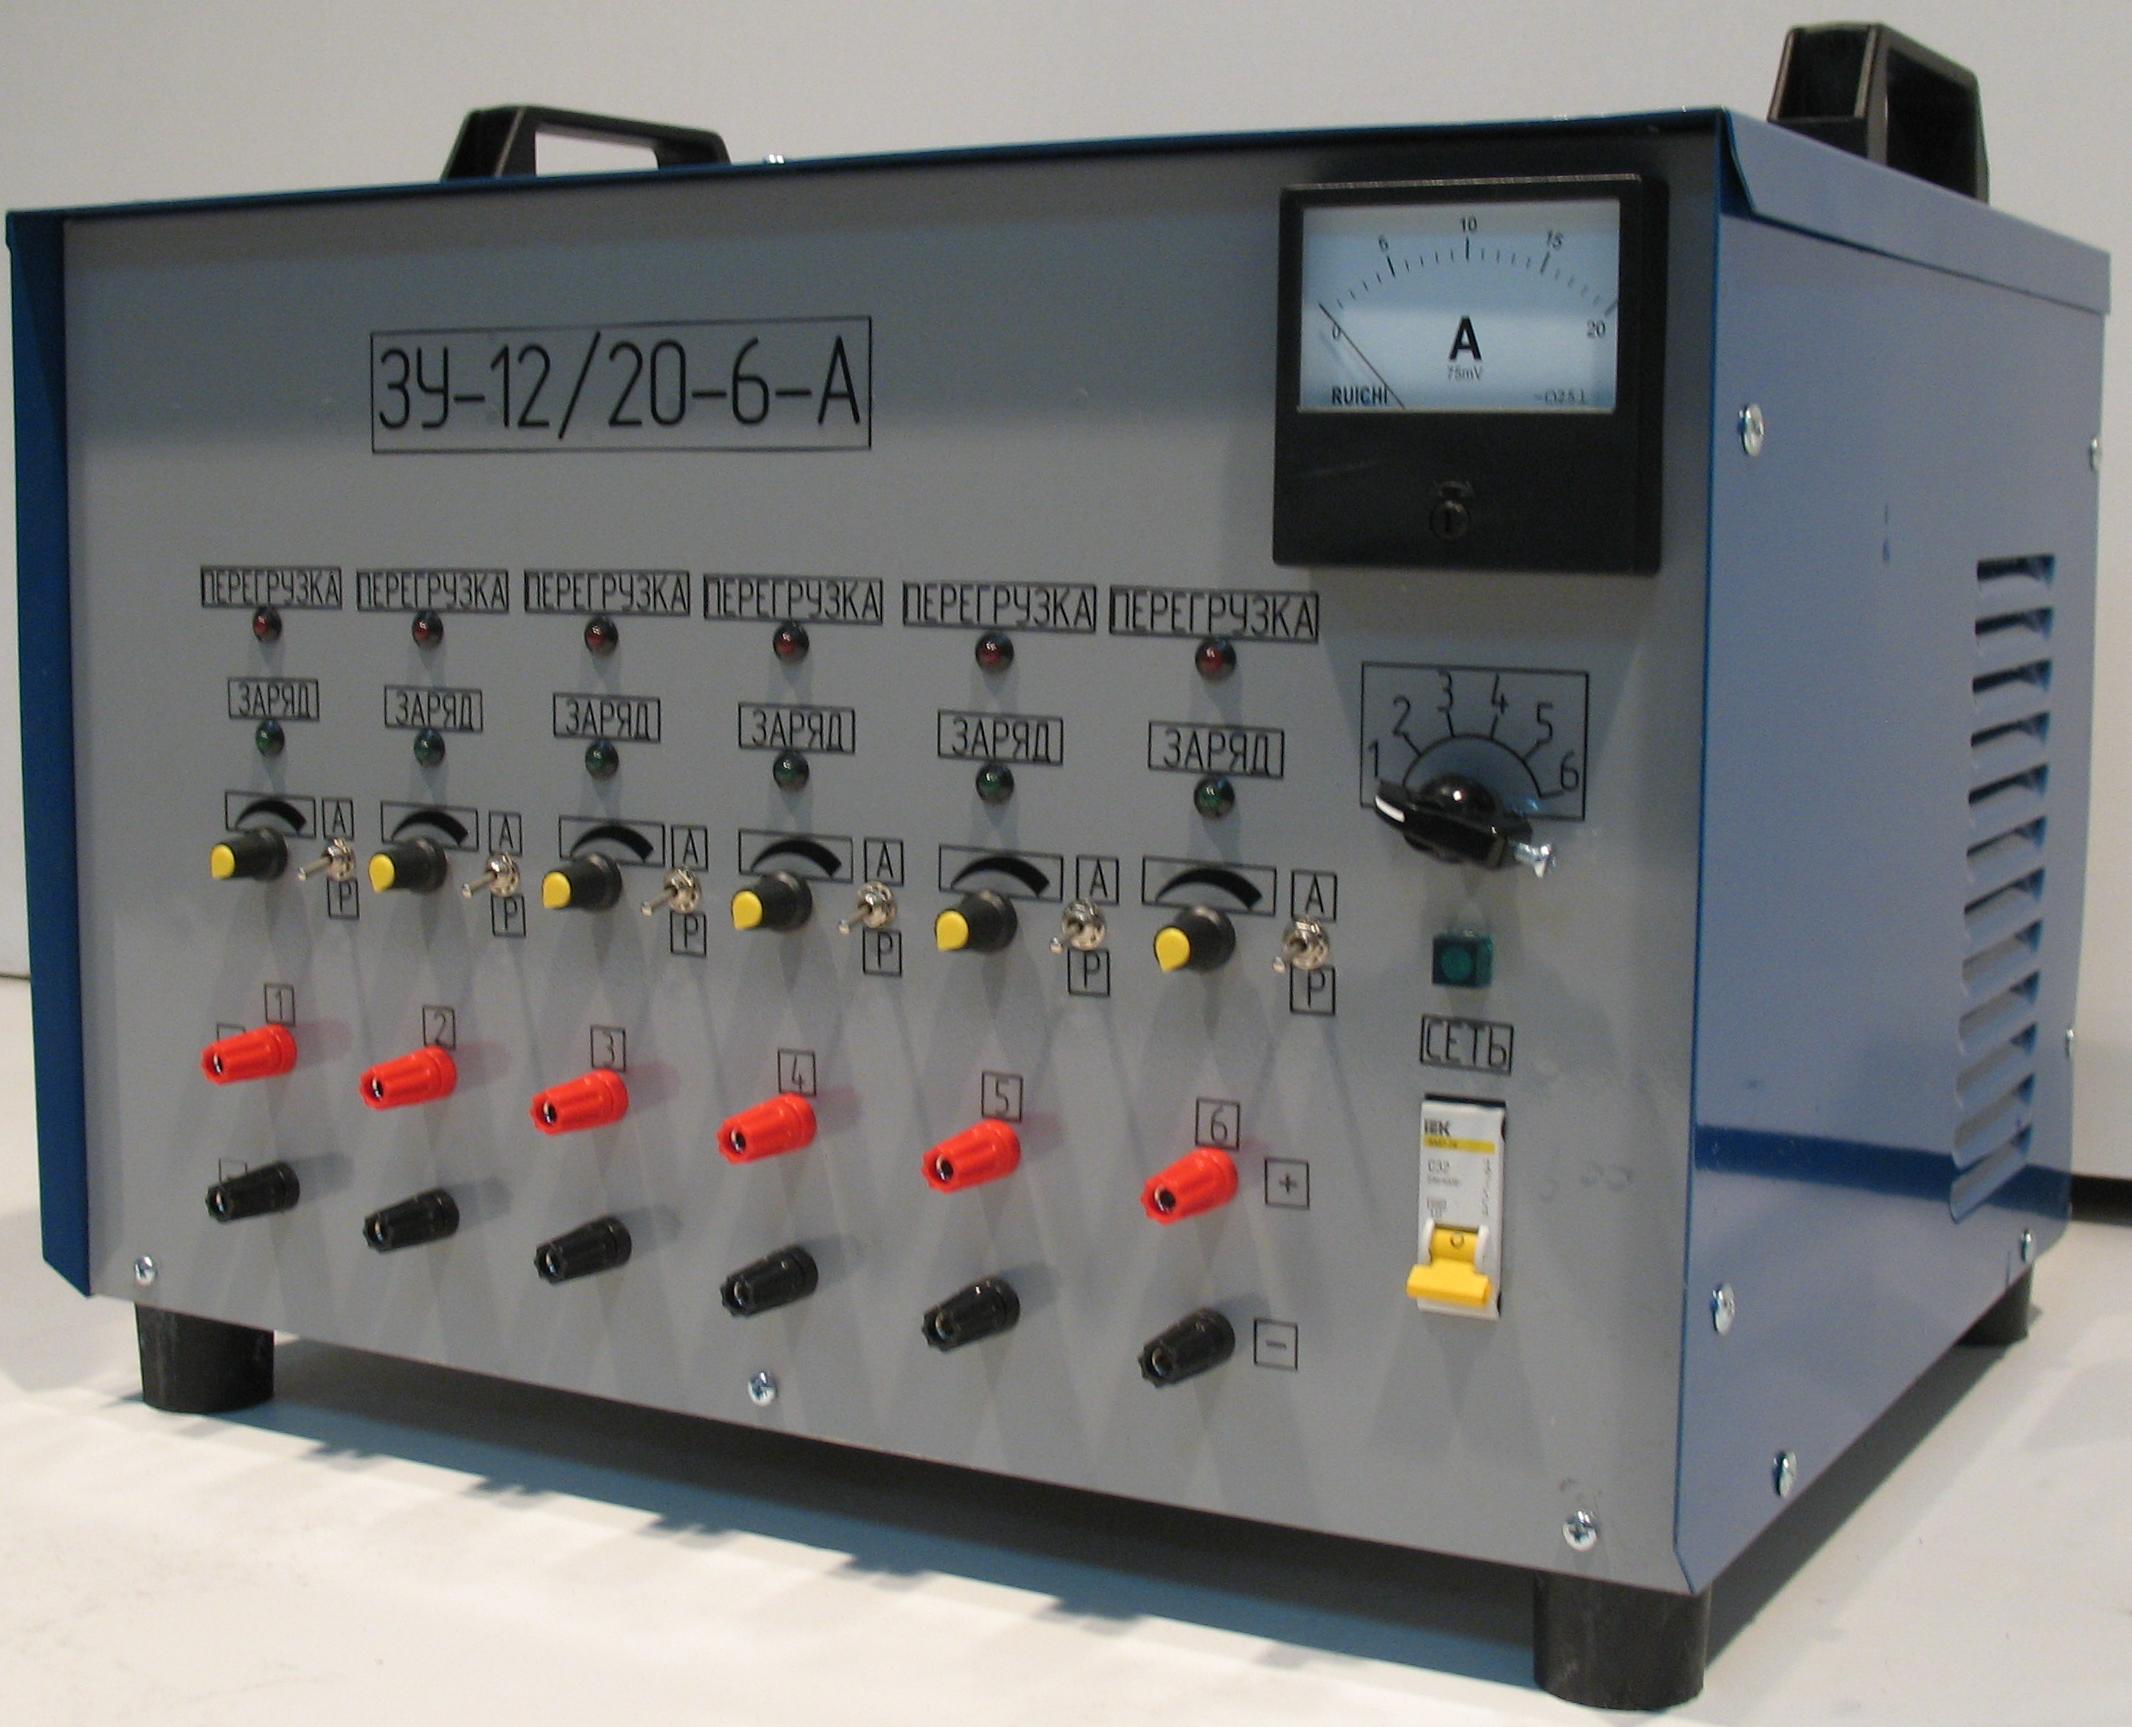 Зарядные приборы. Шестиканальное зарядное устройство ЗУ-12/20-6а. Зарядное устройство Комета ЗУ-2-6а. Автоматическое зарядное устройство ЗУ 20. Многопостовое зарядное устройство ЗУ-12/20-6-А.